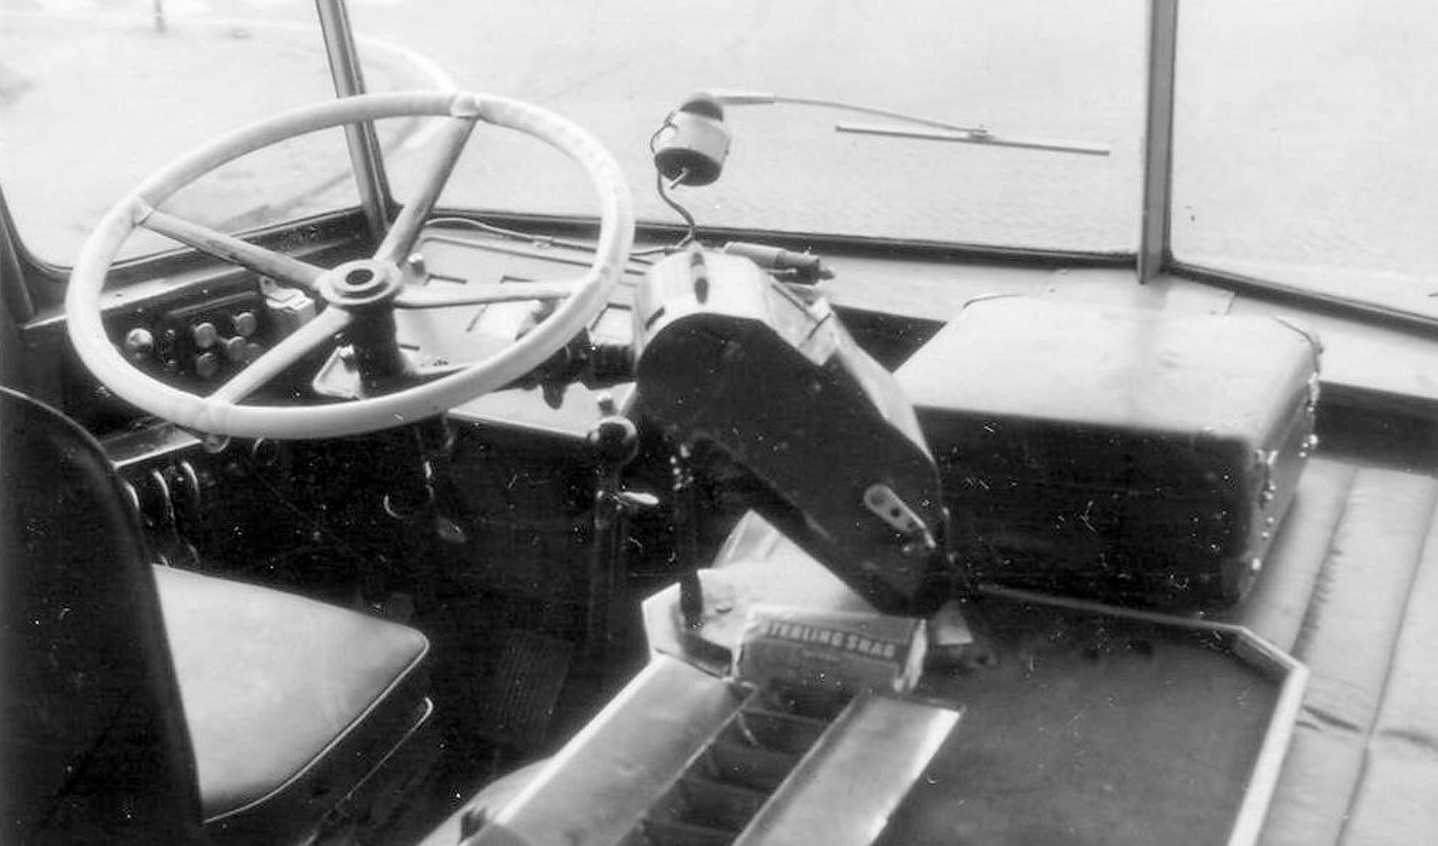 De zitplaats van de bestuurder met het forse houten stuur. Geen mondkapjes aan boord maar wel een pakje Sterling shag van de chauffeur onder de kaartjesautomaat.